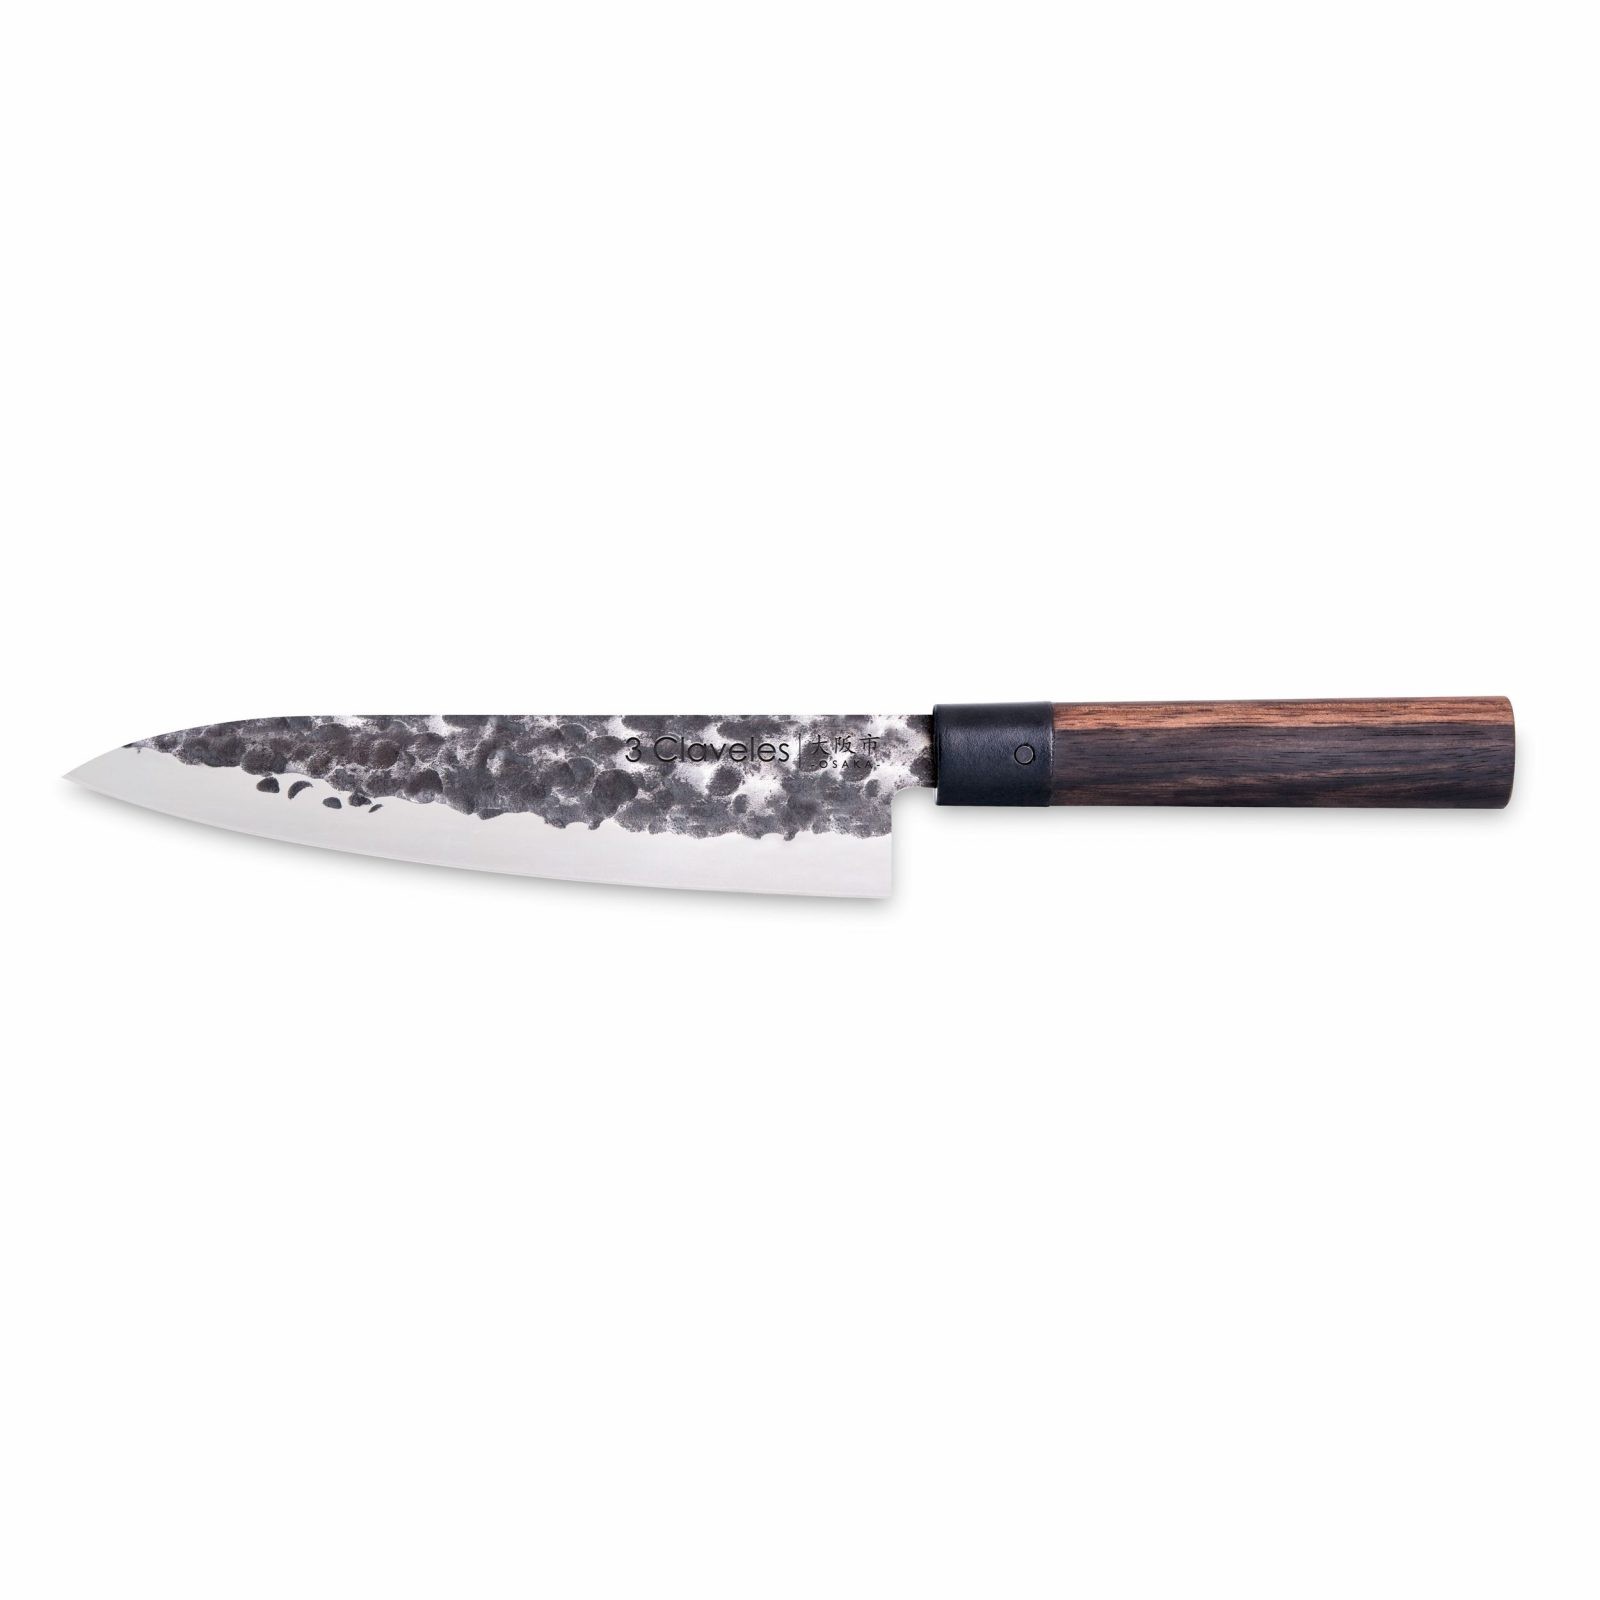 Cuchillo cebollero de 20 cm 3 Claveles Uniblock 1158